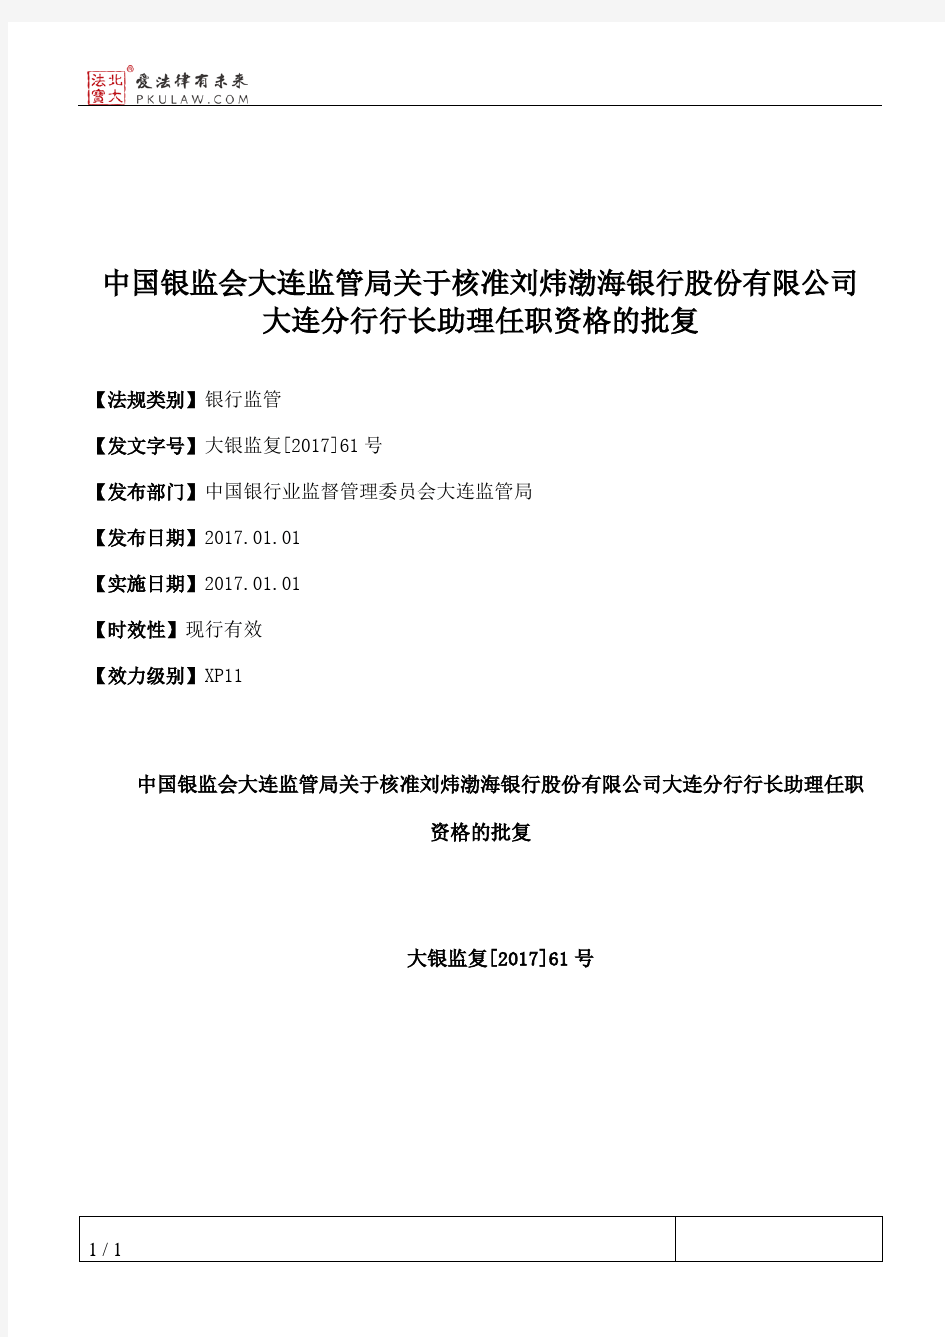 中国银监会大连监管局关于核准刘炜渤海银行股份有限公司大连分行